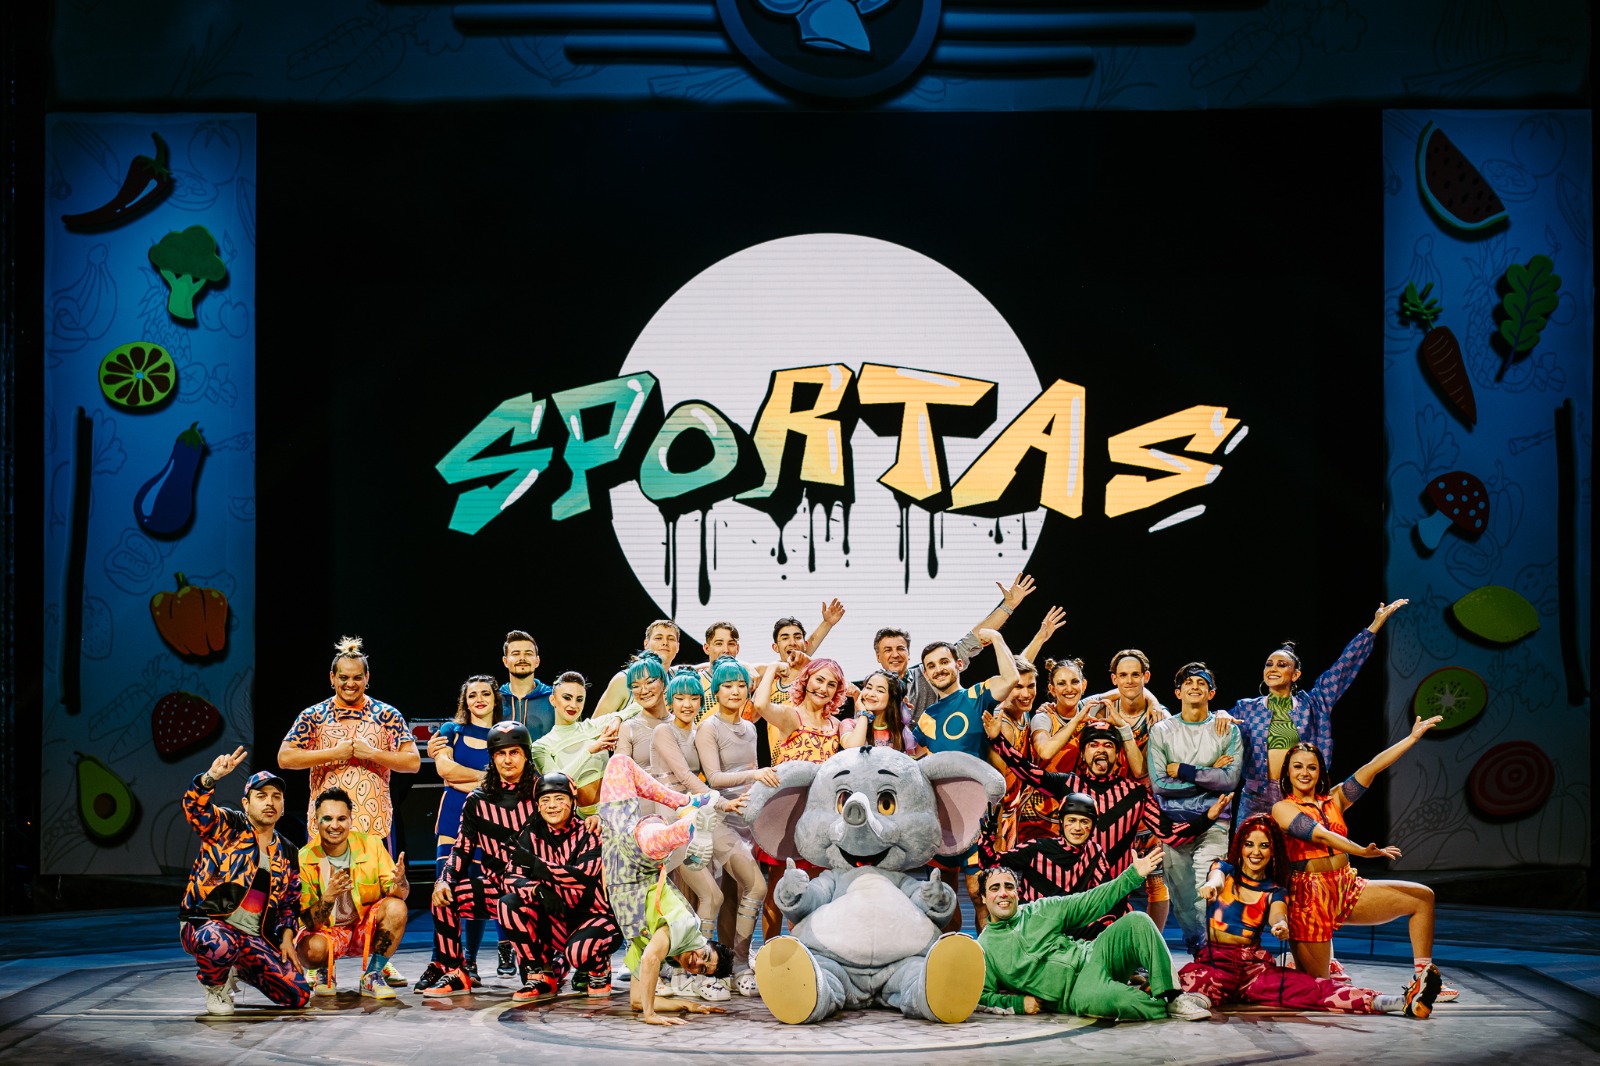 "Circo Sportas"